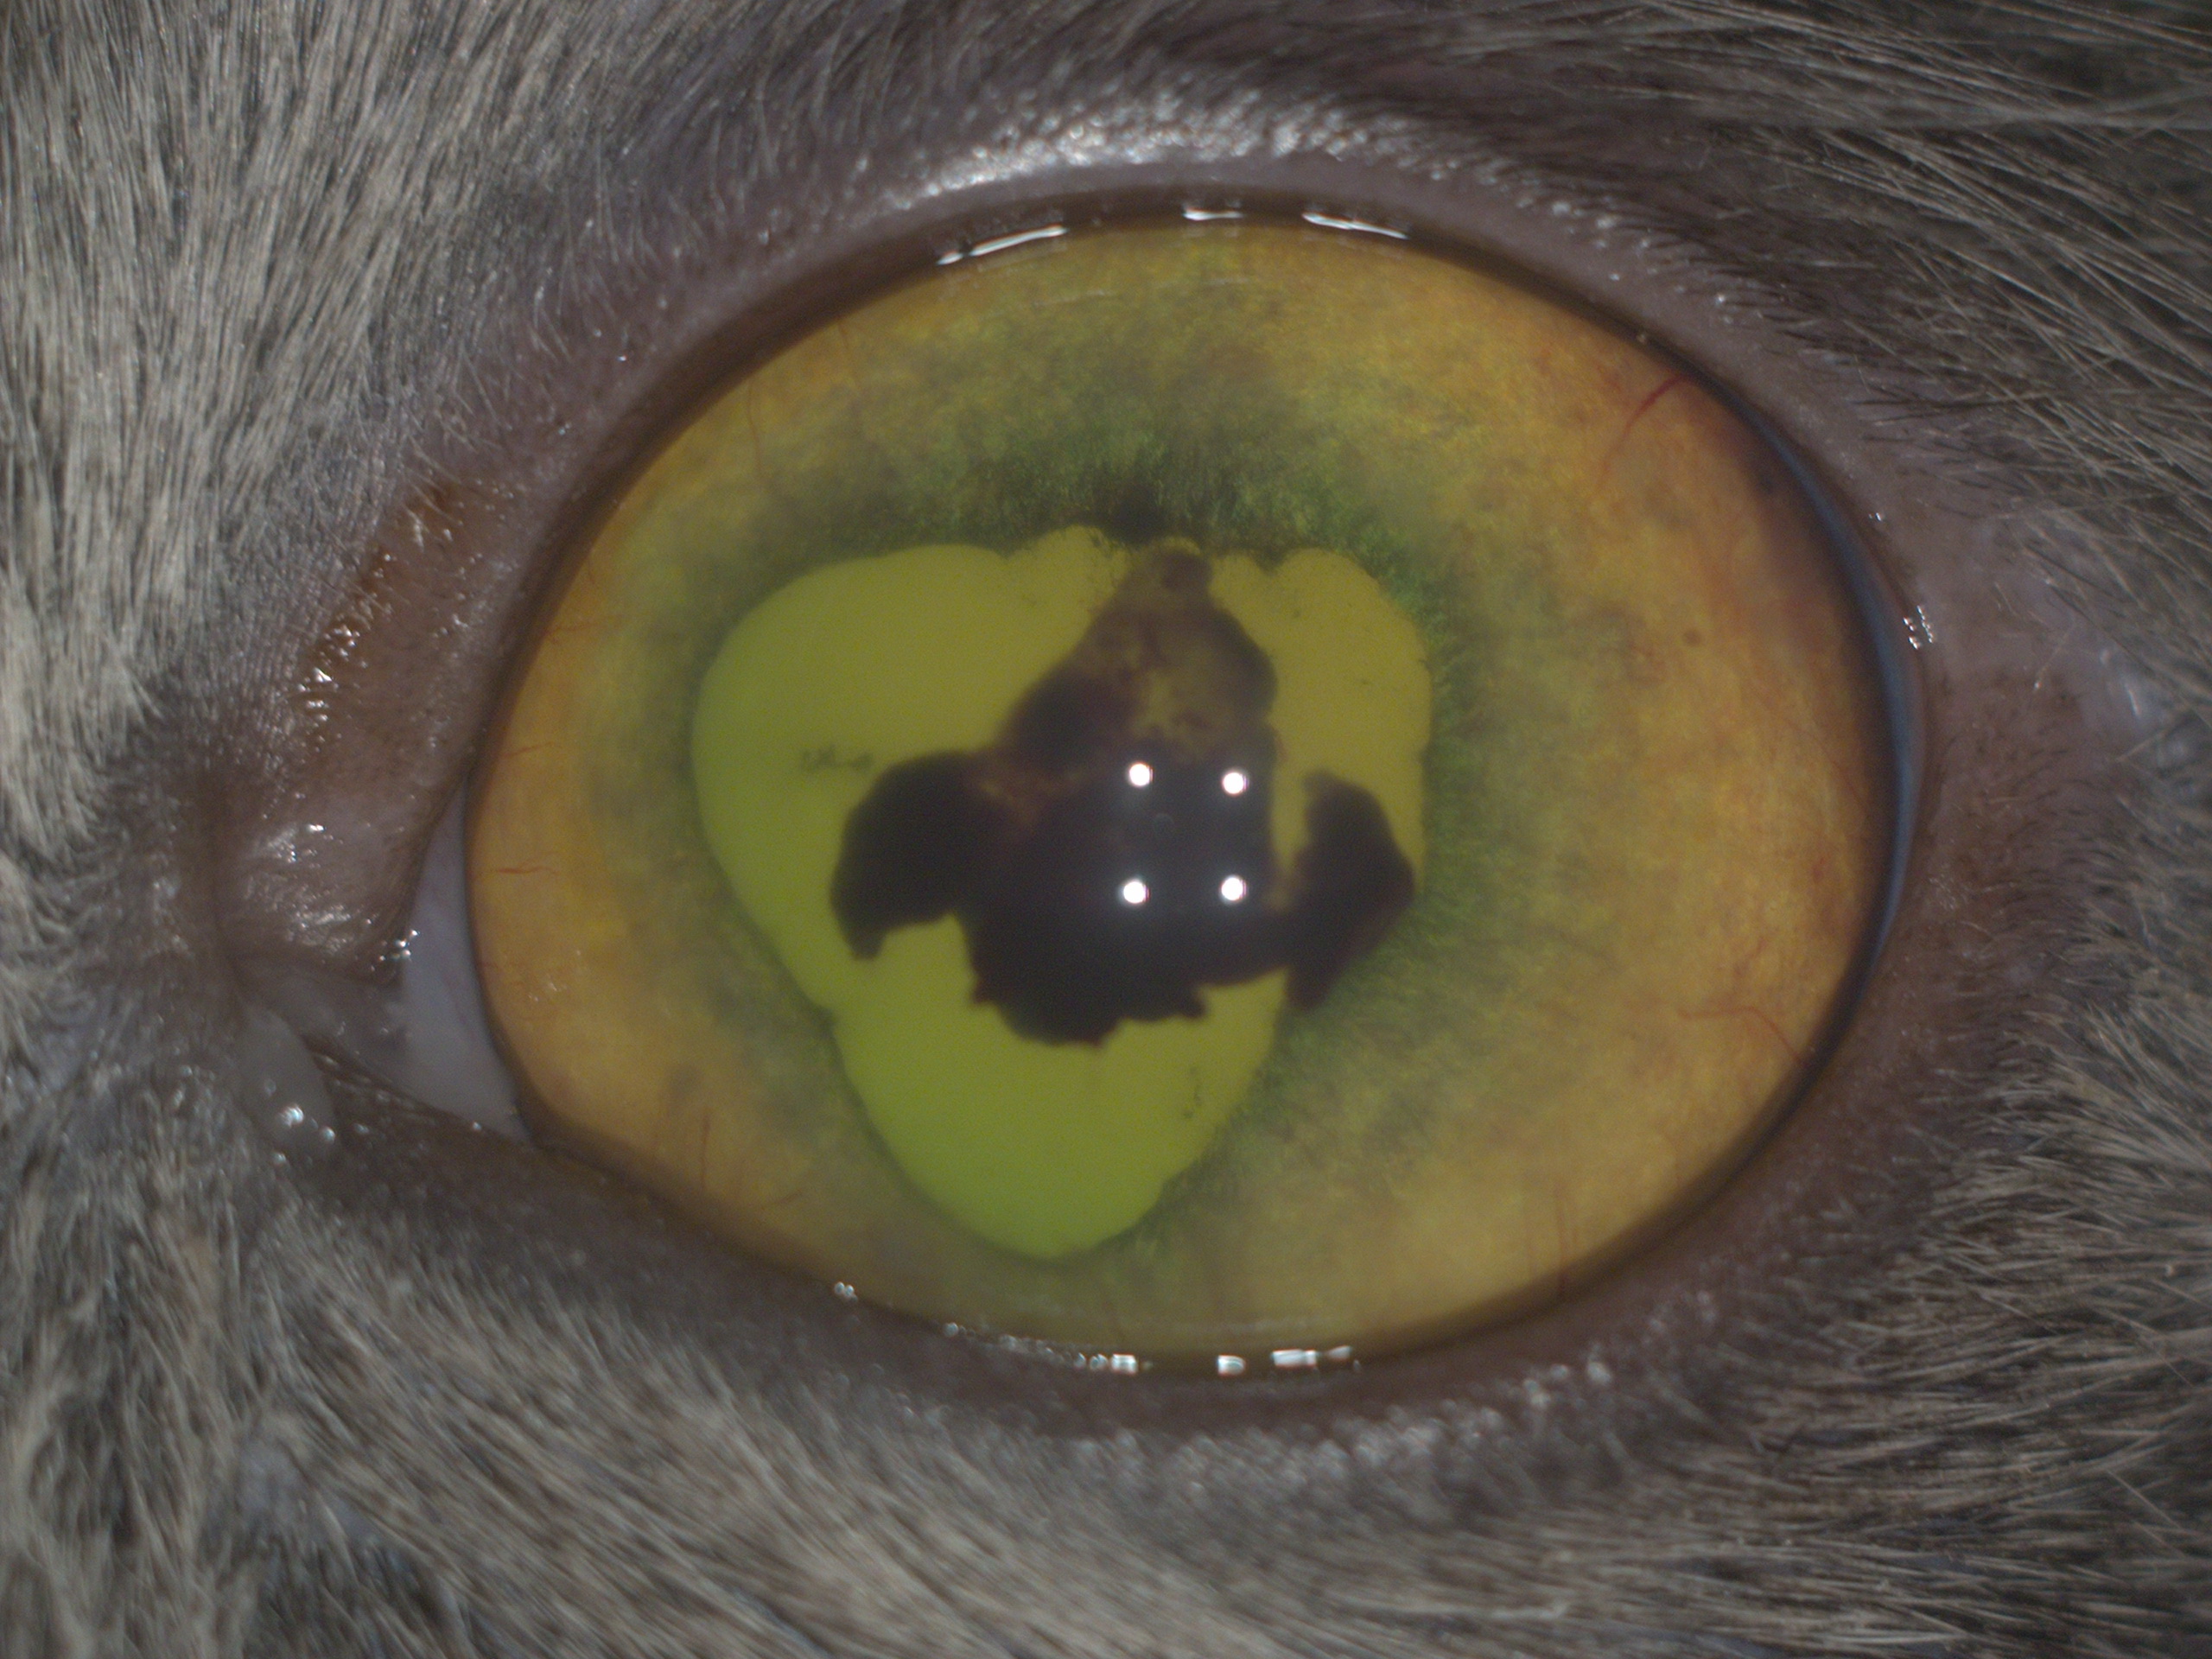 Рис.18 Кот с Рис.17 на 2 день лечения(улучшения со стороны переднего отрезка,лучшая визуализация глазного дна;на ПГ видны складки сетчатки,соответствующие дегенеративным изменениям).